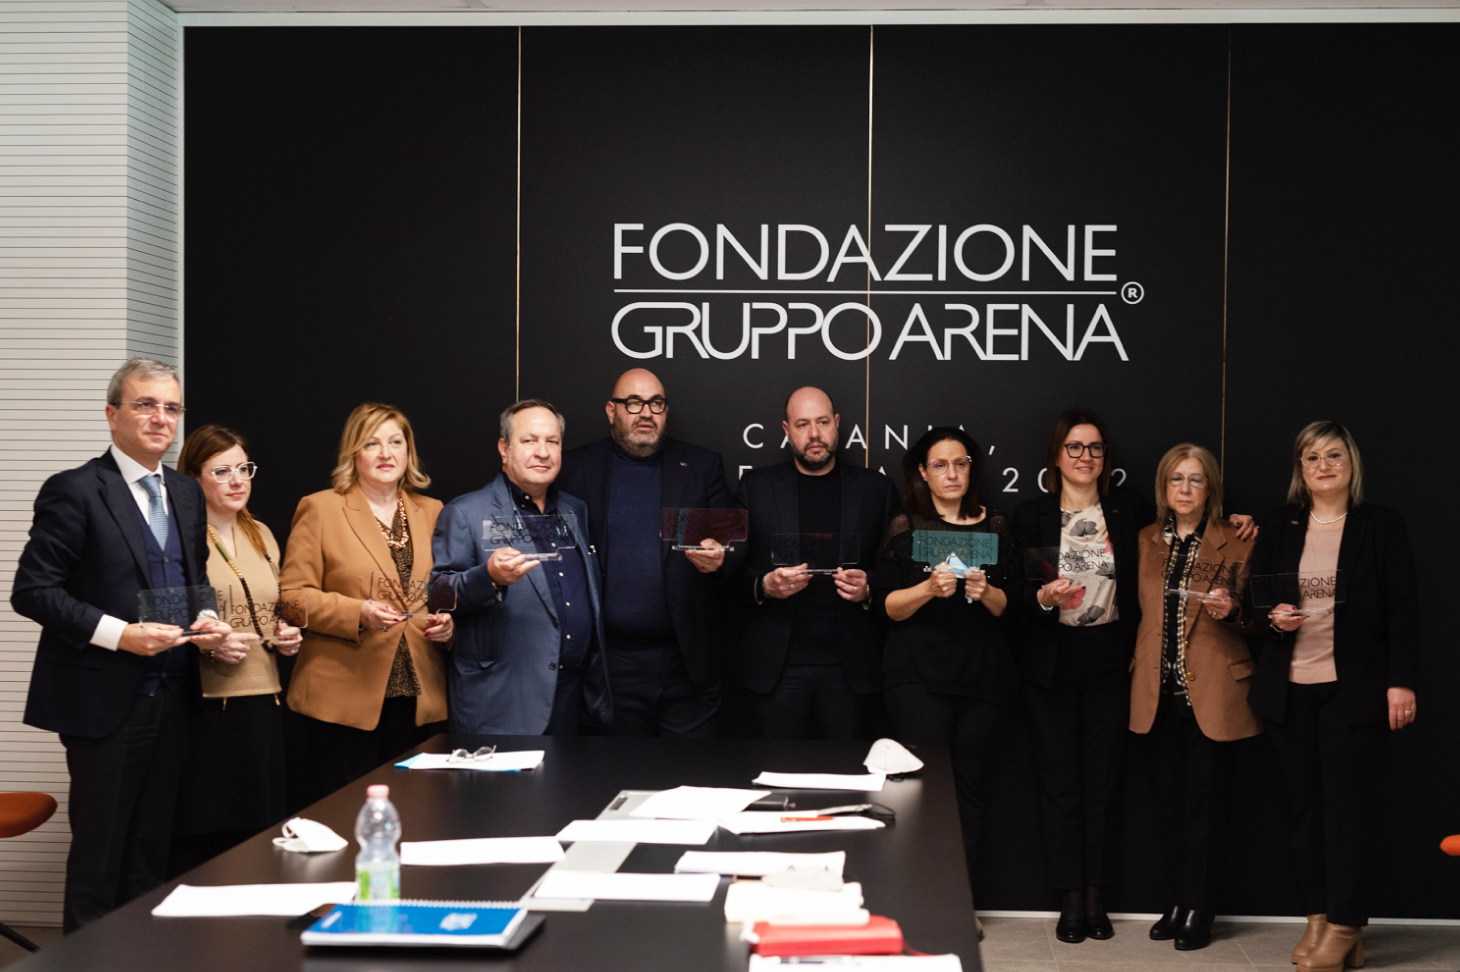 Nasce Fondazione Gruppo Arena